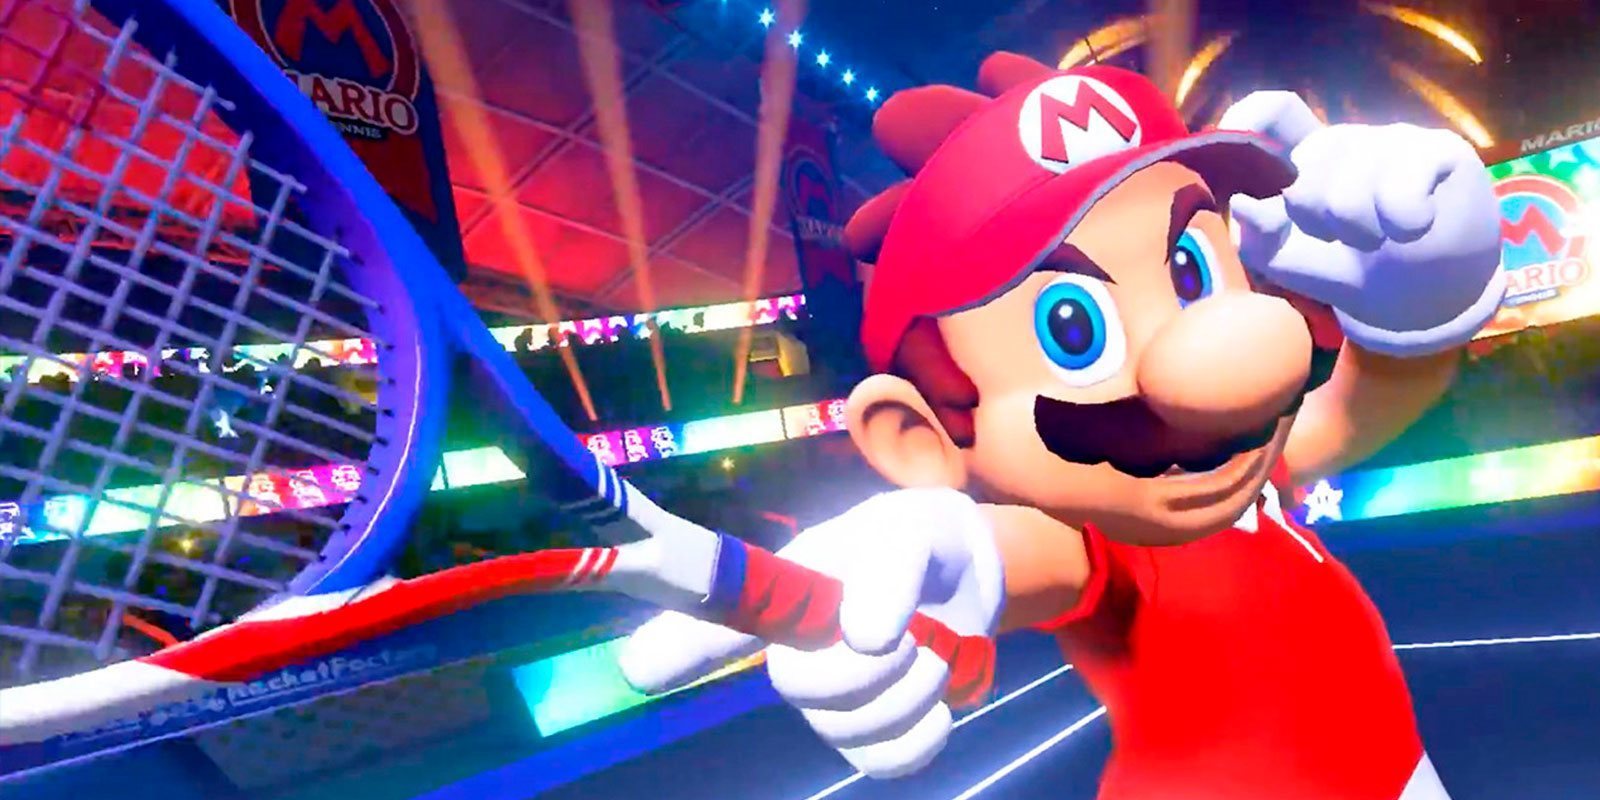 Una tienda japonesa filtra la fecha de lanzamiento de 'Mario Tennis Aces'